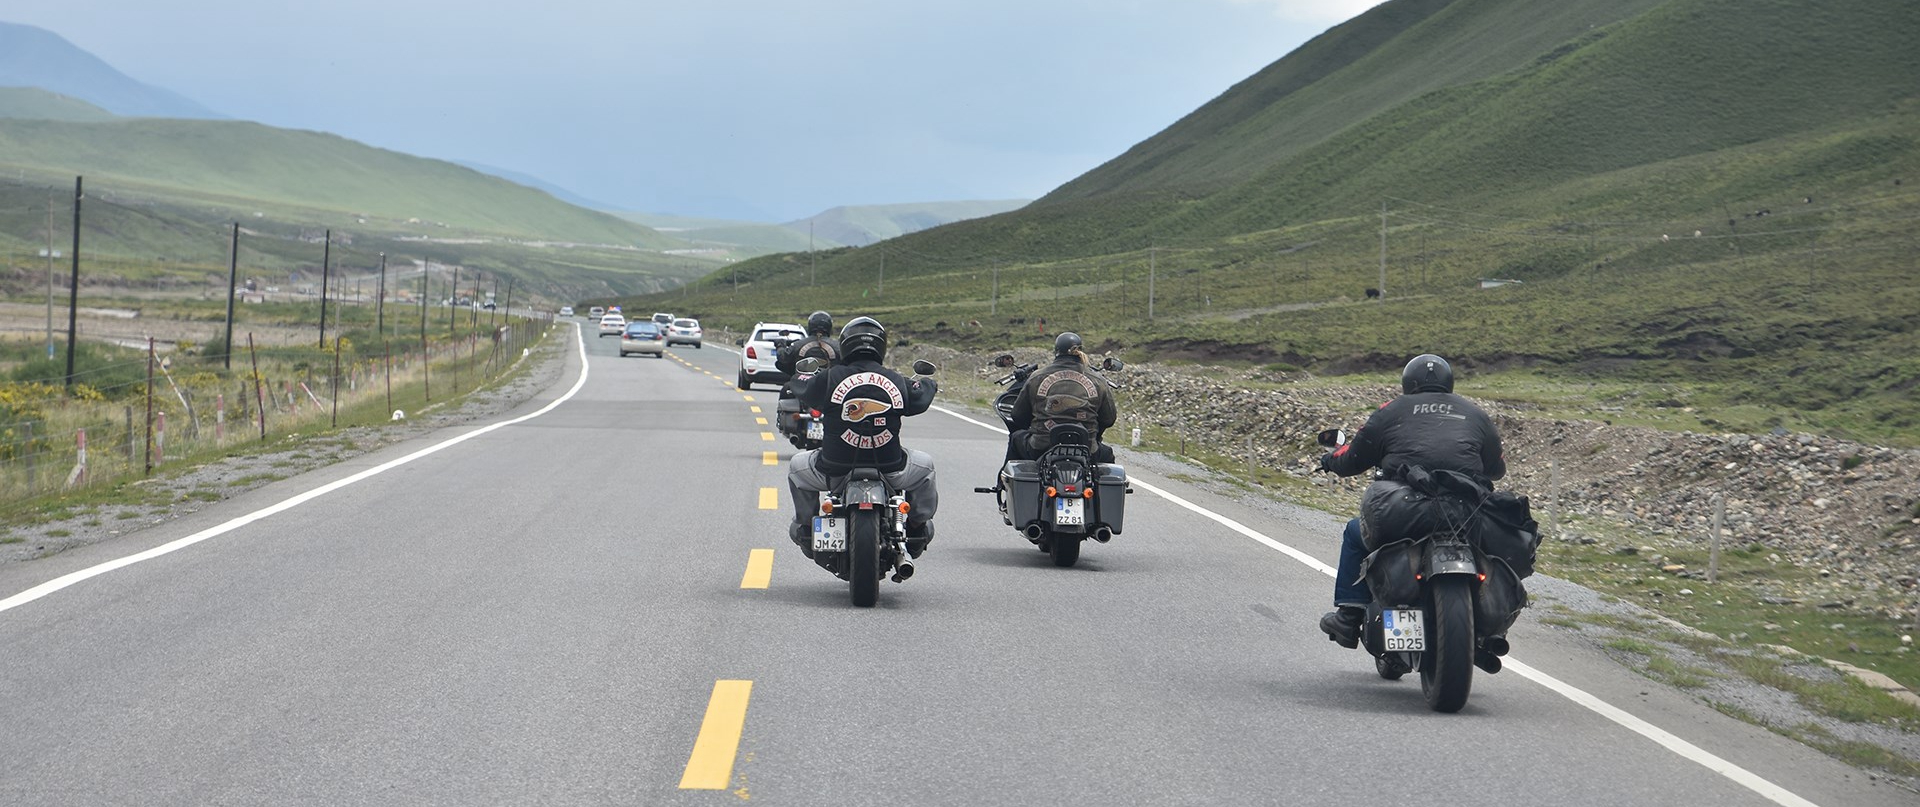 Viaggio in Moto a Noleggio dal Sichuan via Yunnan al Tibet